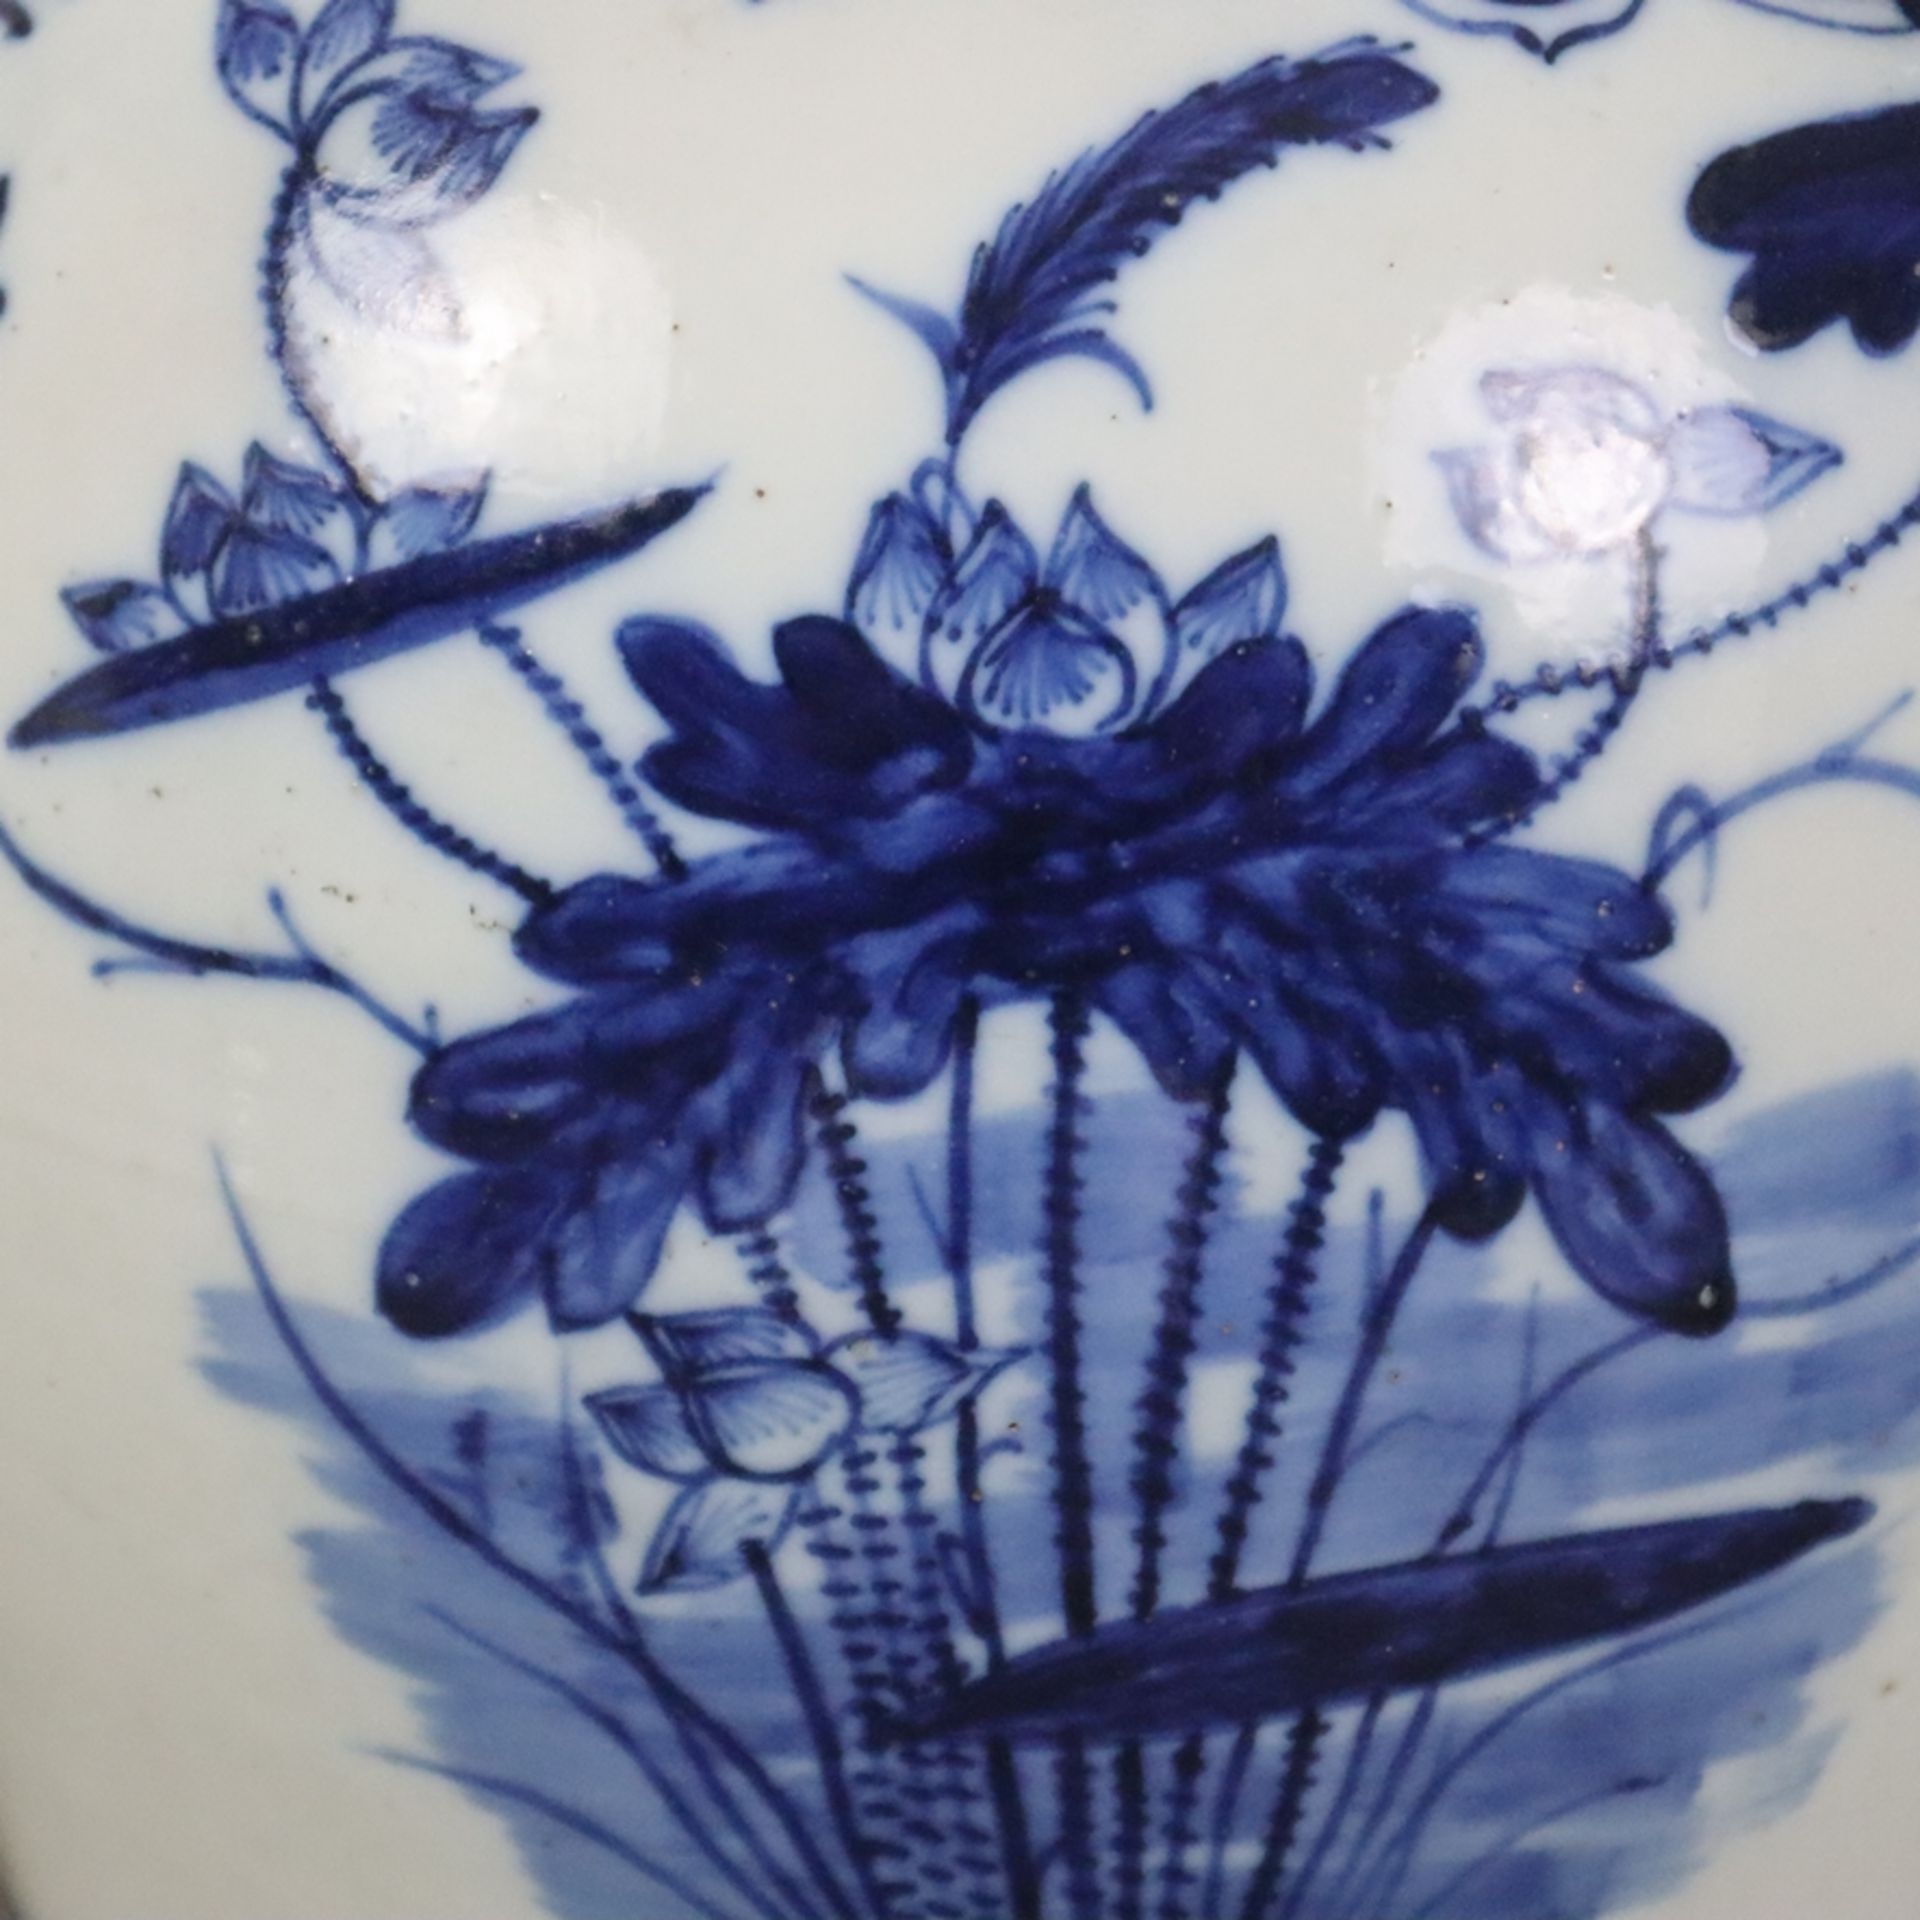 Blau-weiße Balustervase - China, späte Qing-Dynastie, Porzellan, stark gebauchte Wandung mit ausges - Bild 6 aus 9